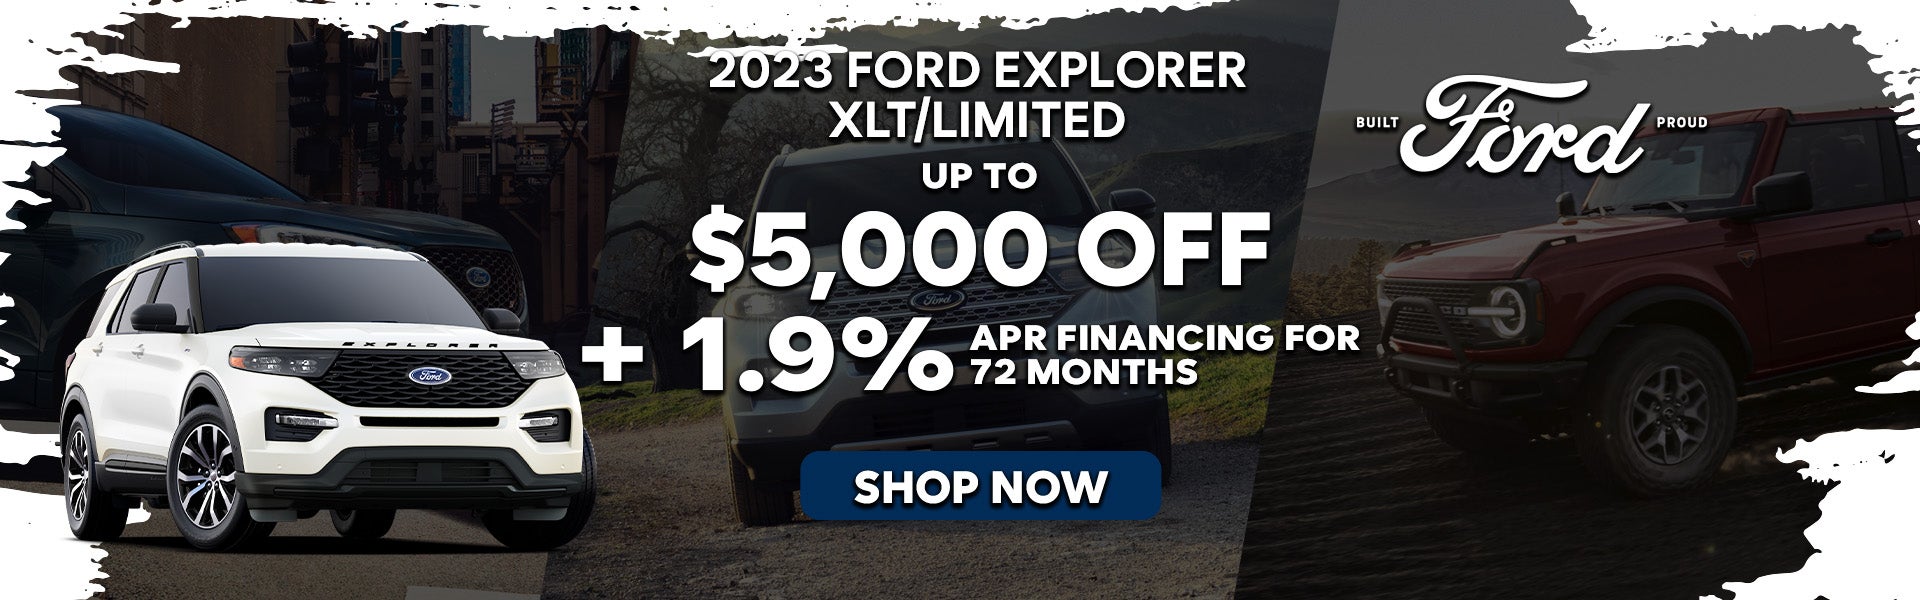 2023 Ford Explorer XLT/Limited